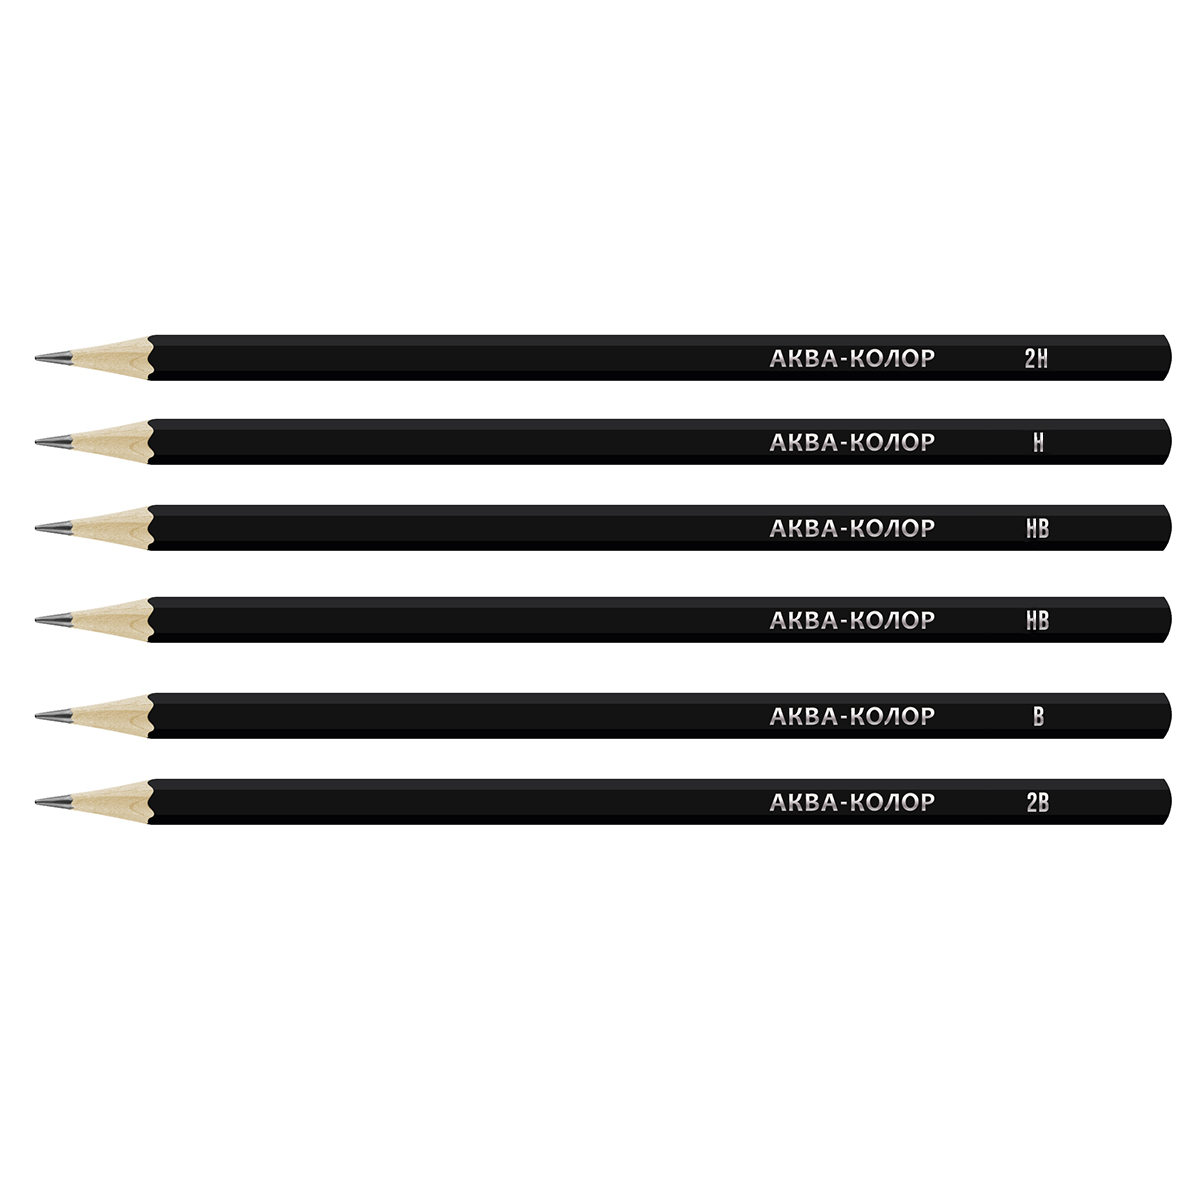 Аква-колор Изостудия IZO-GP6B Набор чернографитных карандашей заточенный 6 шт. Фото 2.